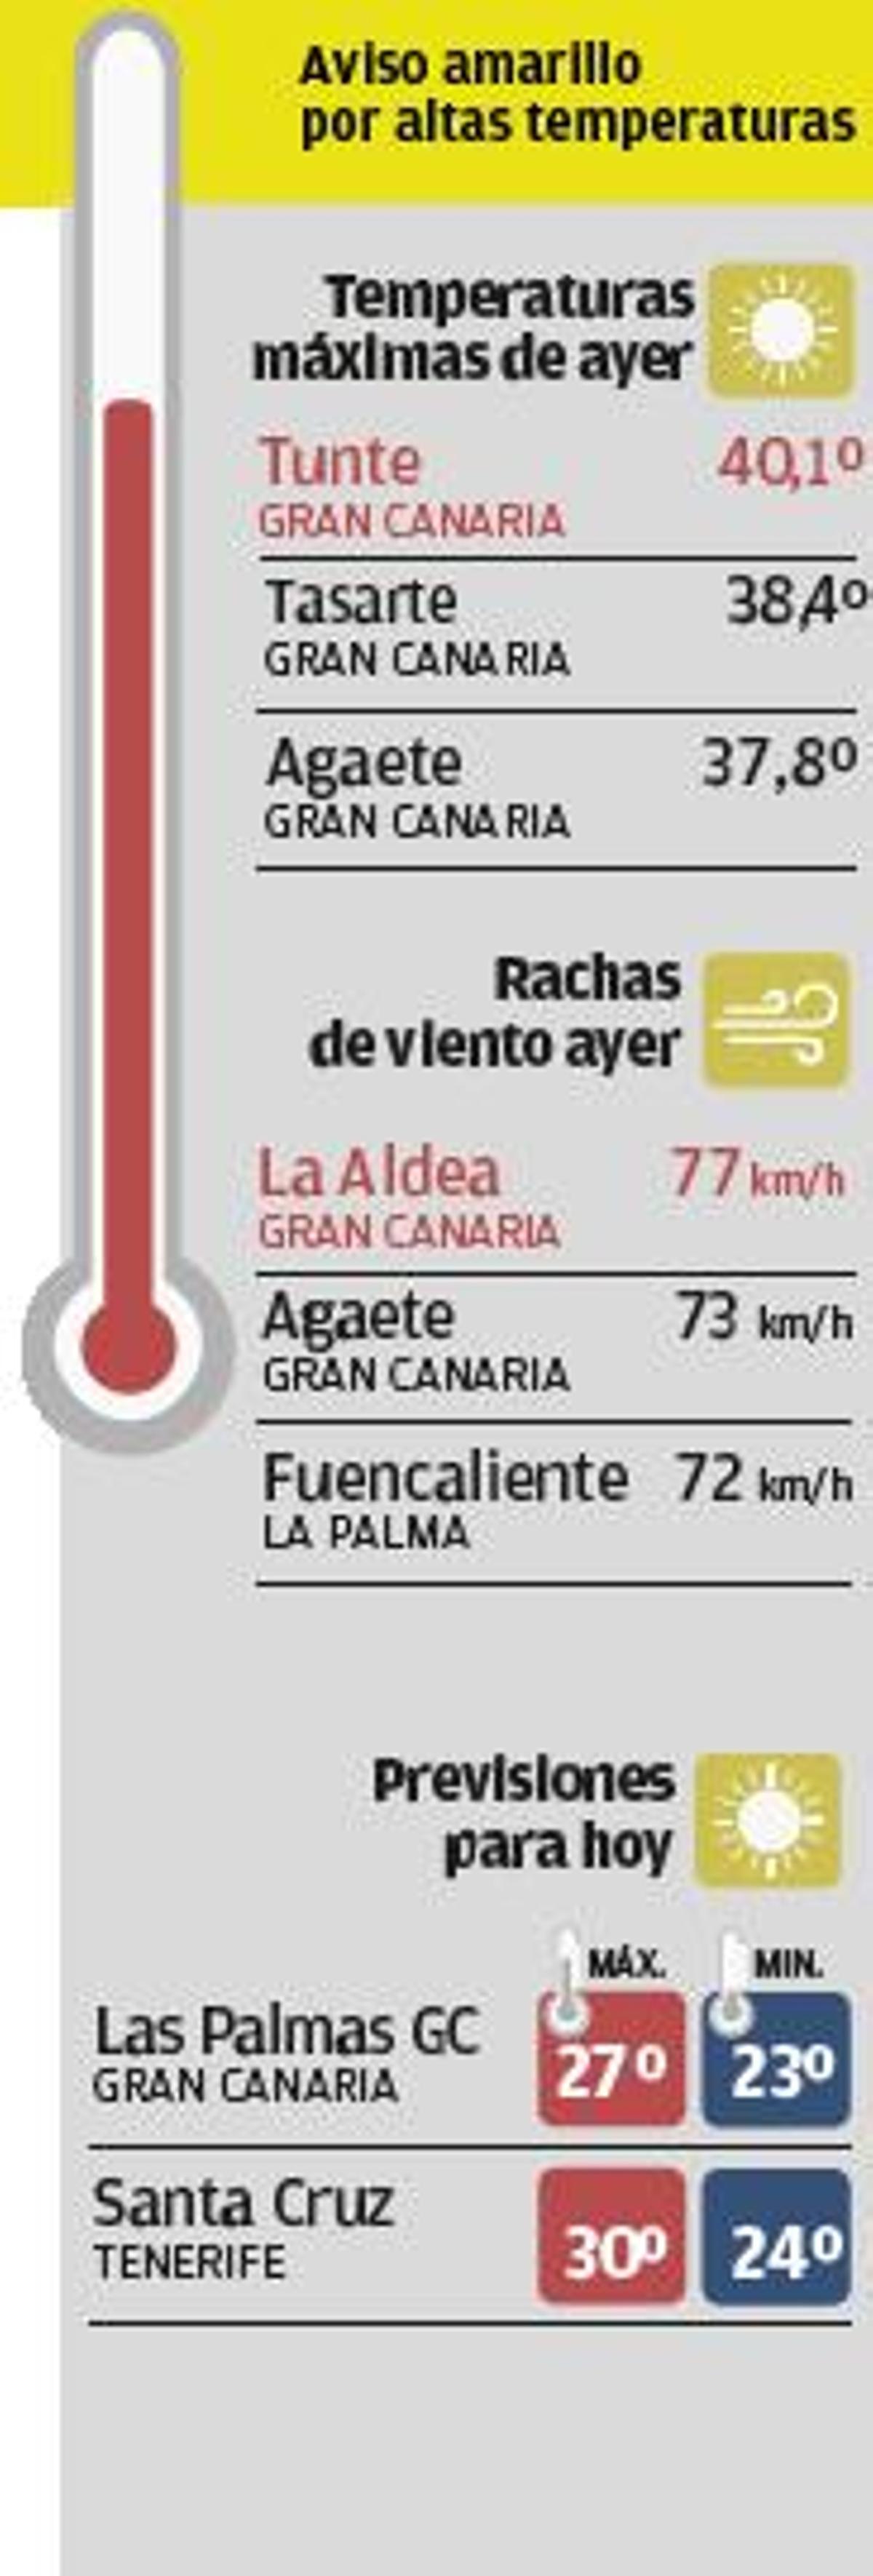 Gran Canaria acumula siete días superando los 40 grados centígrados